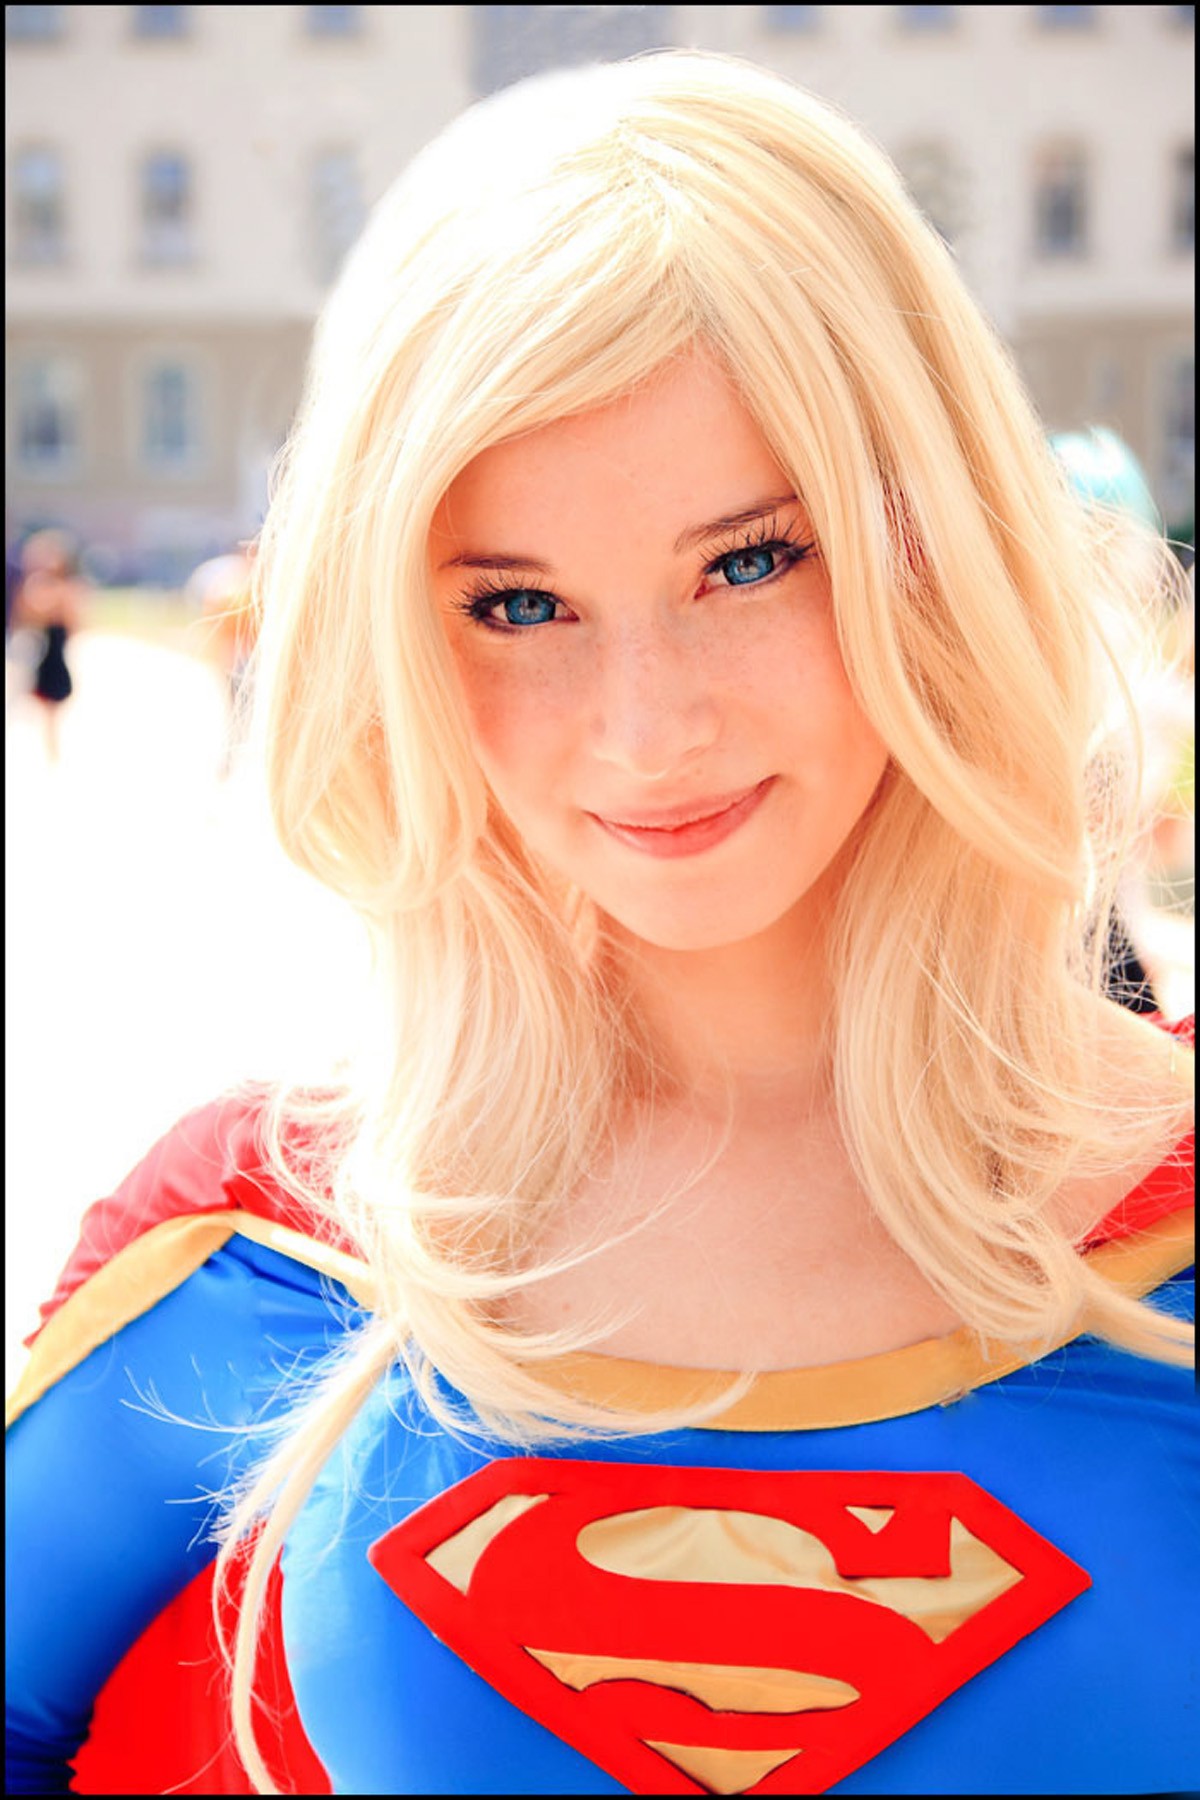 People 1200x1800 Enji Night women cosplay blonde Supergirl smiling model blue eyes long hair looking at viewer superheroines costumes